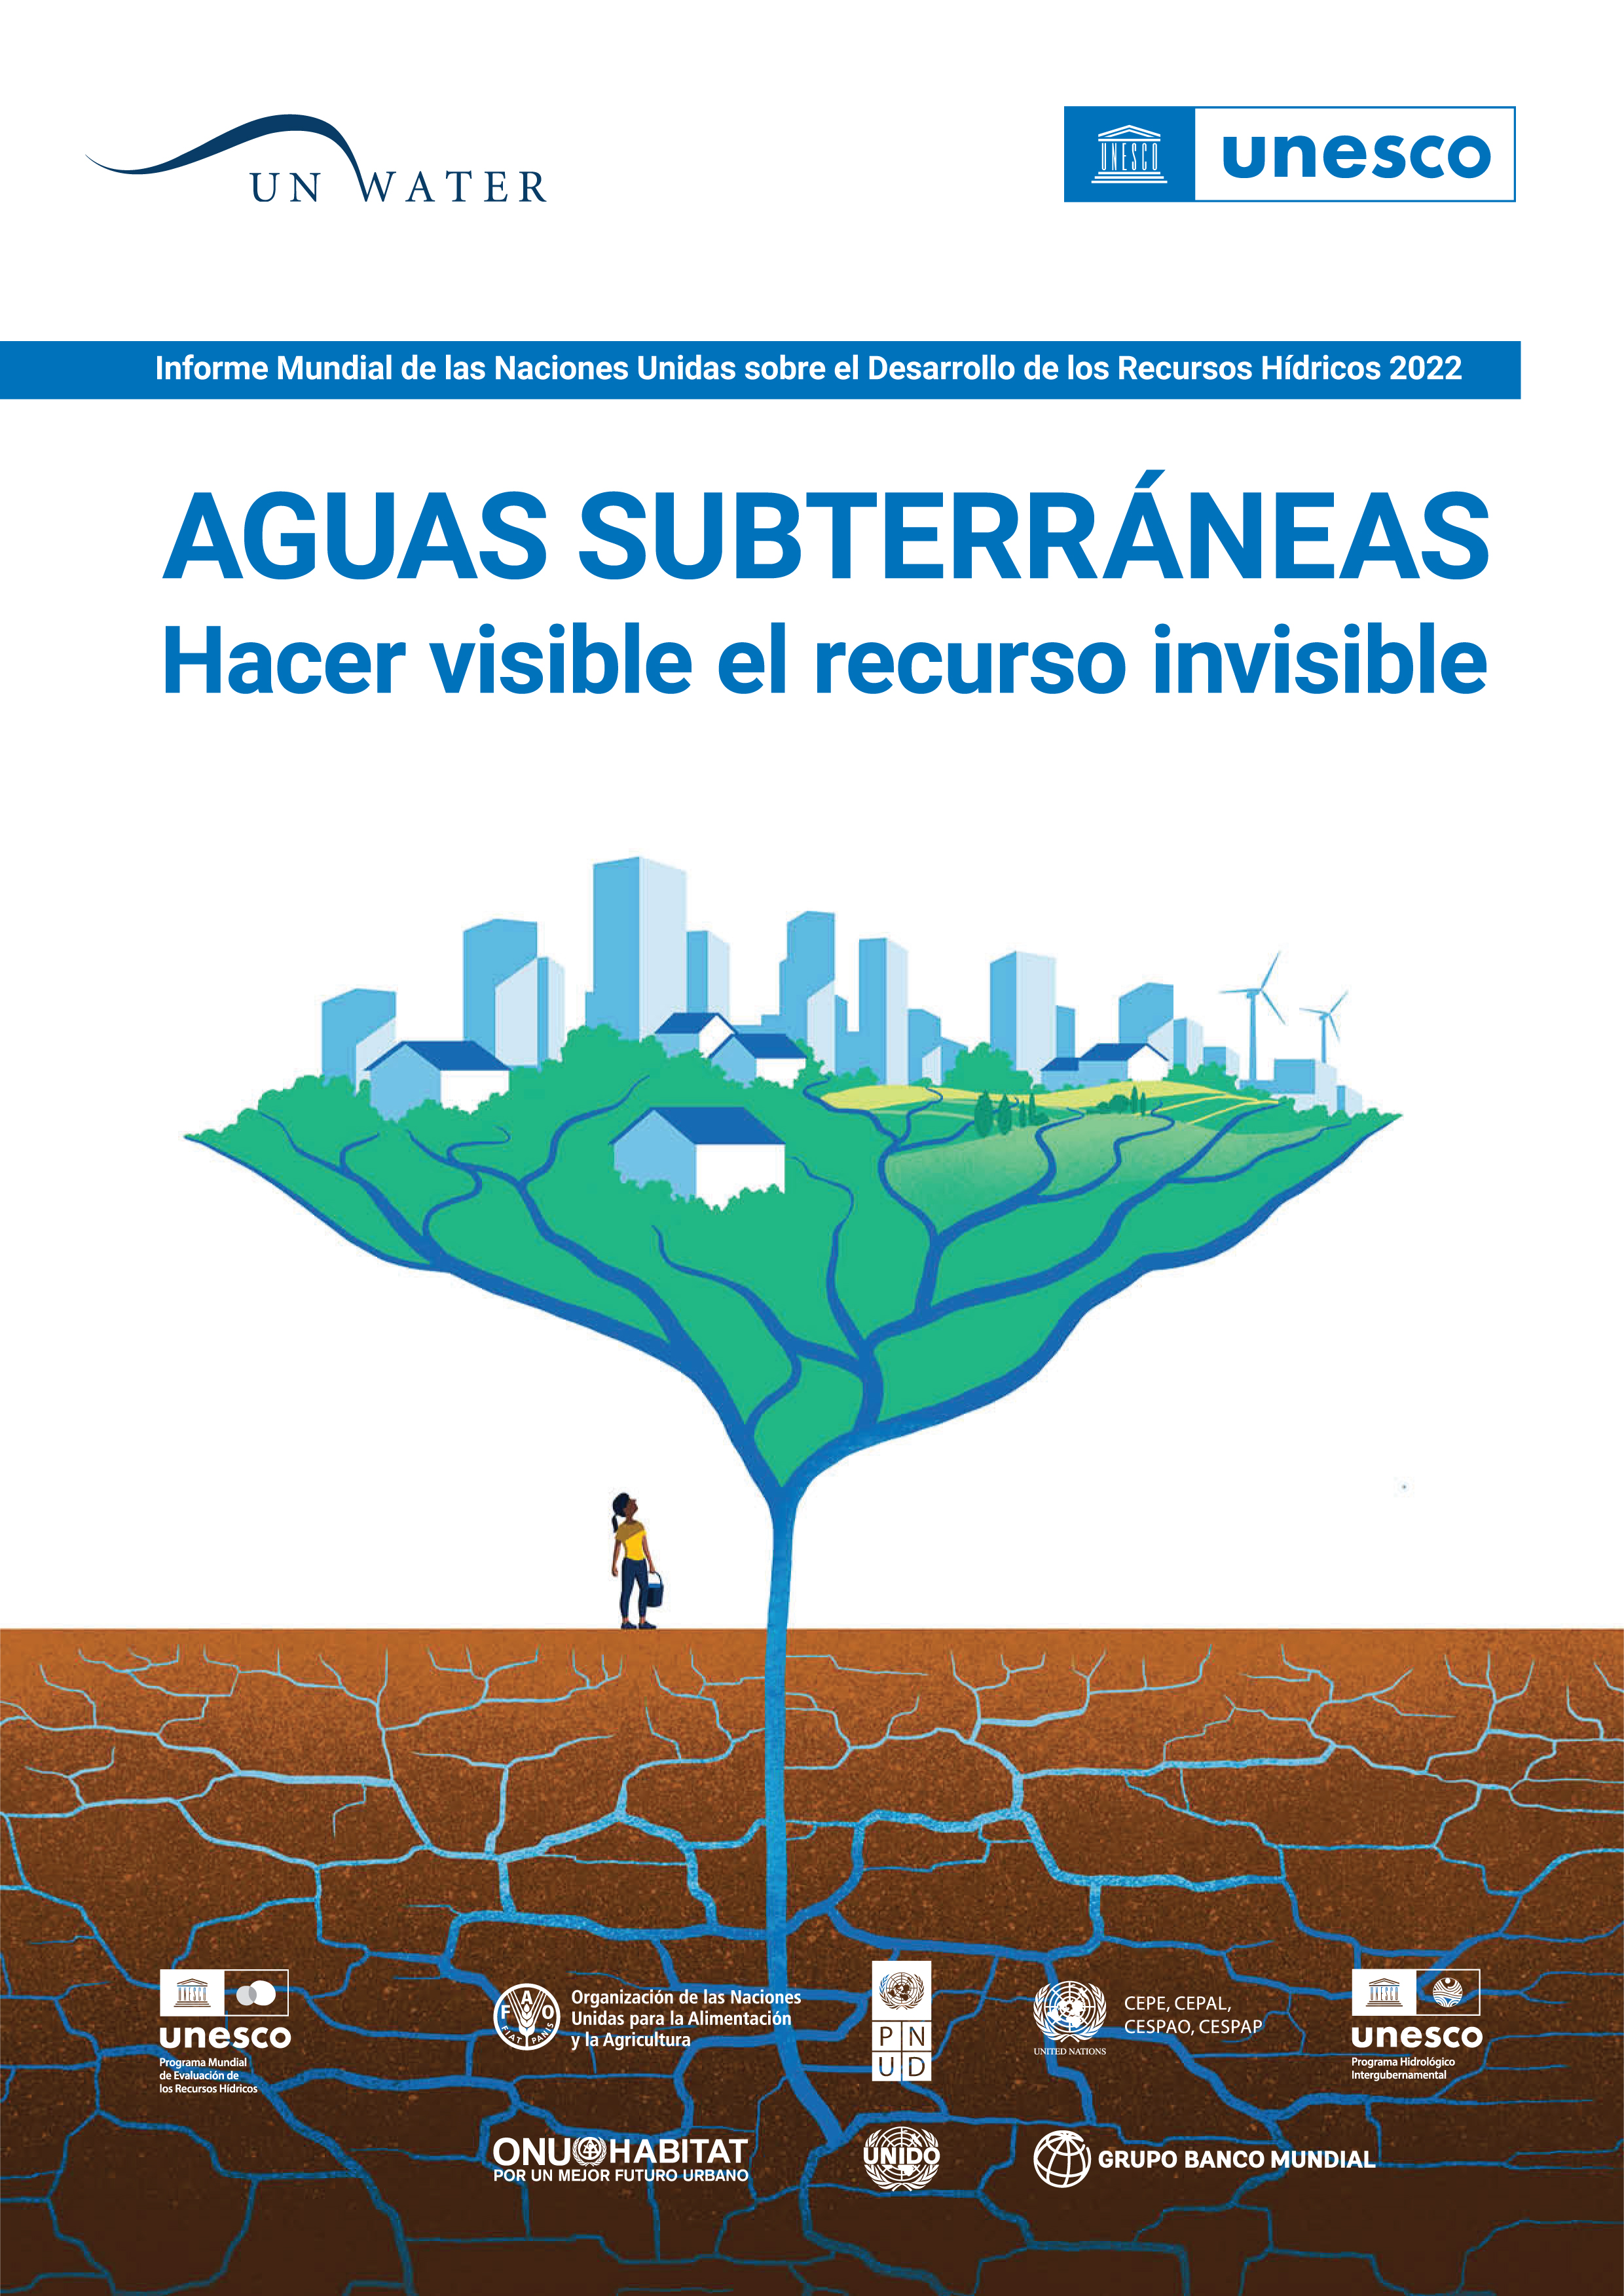 image of Informe Mundial de las Naciones Unidas sobre el Desarrollo de los Recursos Hídricos 2022